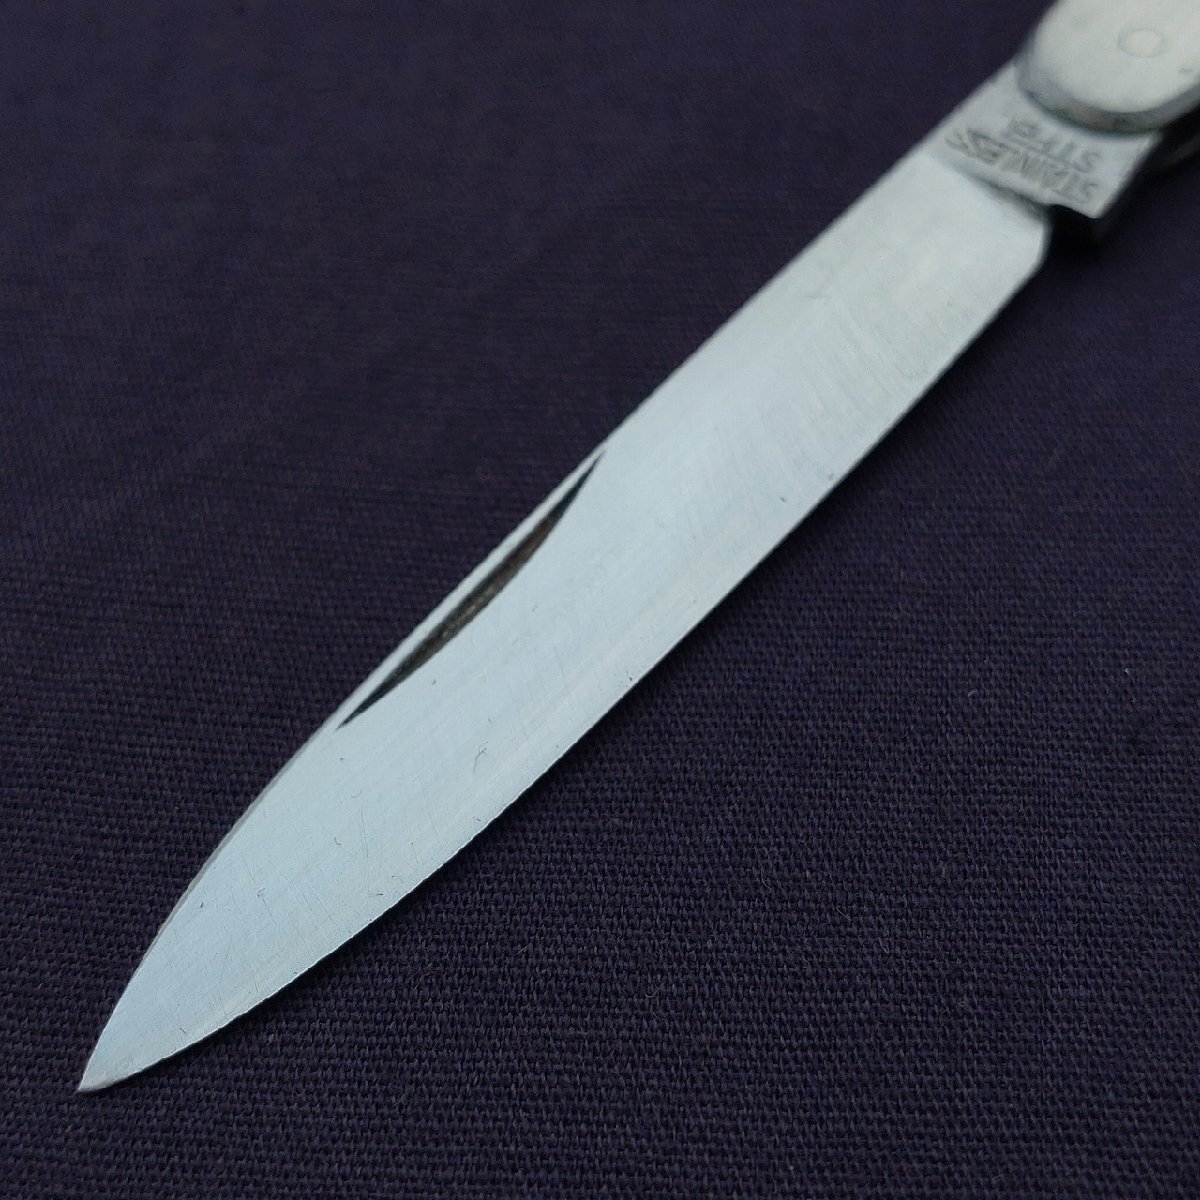 折り畳みナイフ 刃長約54㎜ 全長約142㎜ 小型ナイフ 携帯用刃物 【7189】の画像3